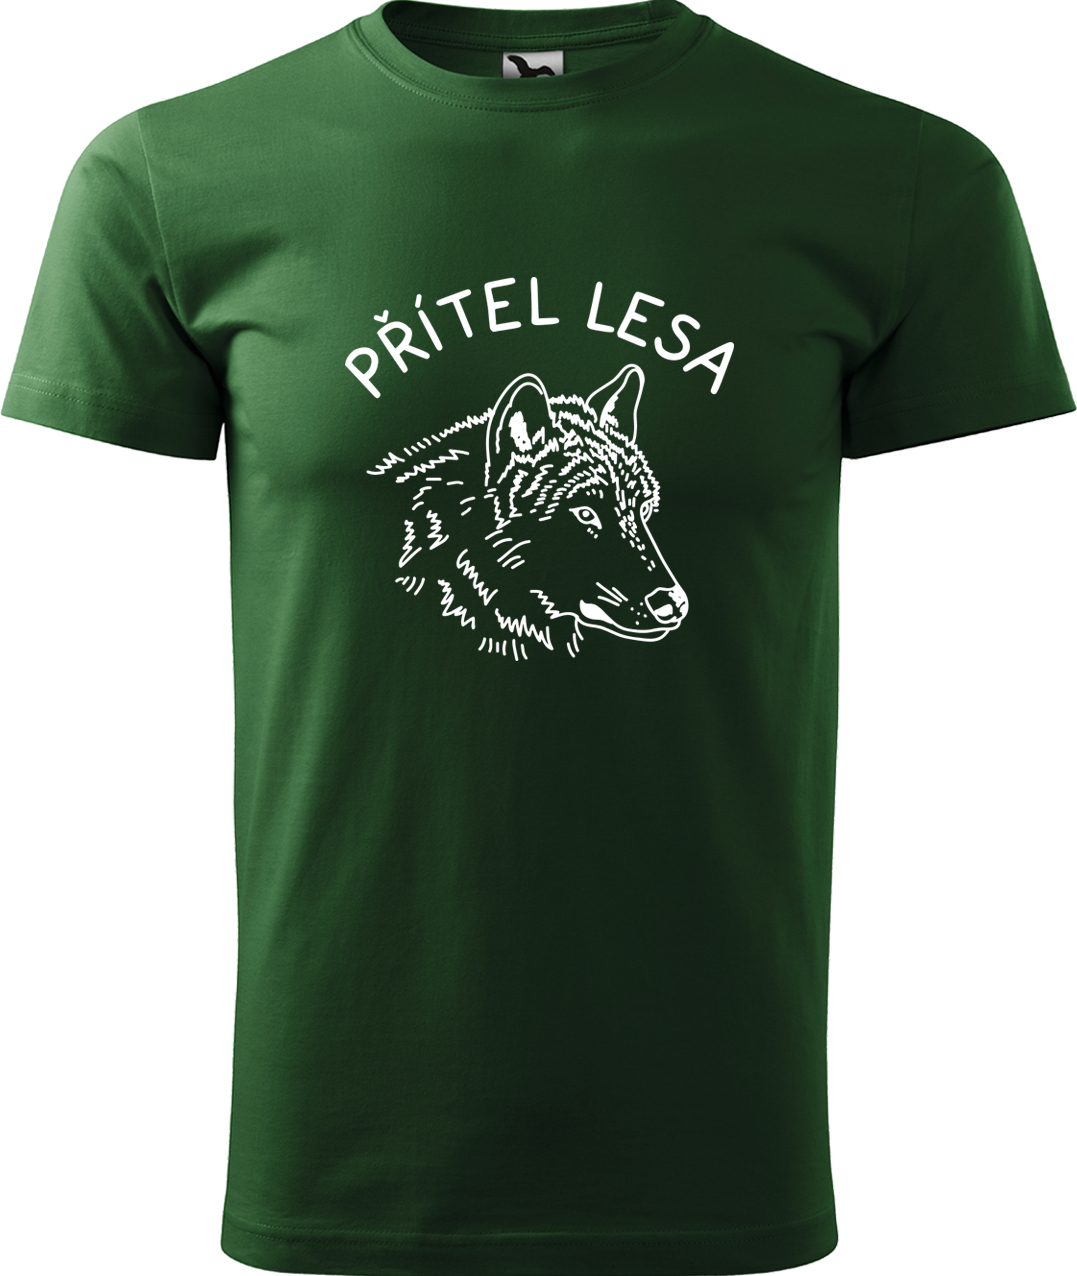 Pánské tričko s vlkem - Přítel lesa Velikost: XL, Barva: Lahvově zelená (06), Střih: pánský